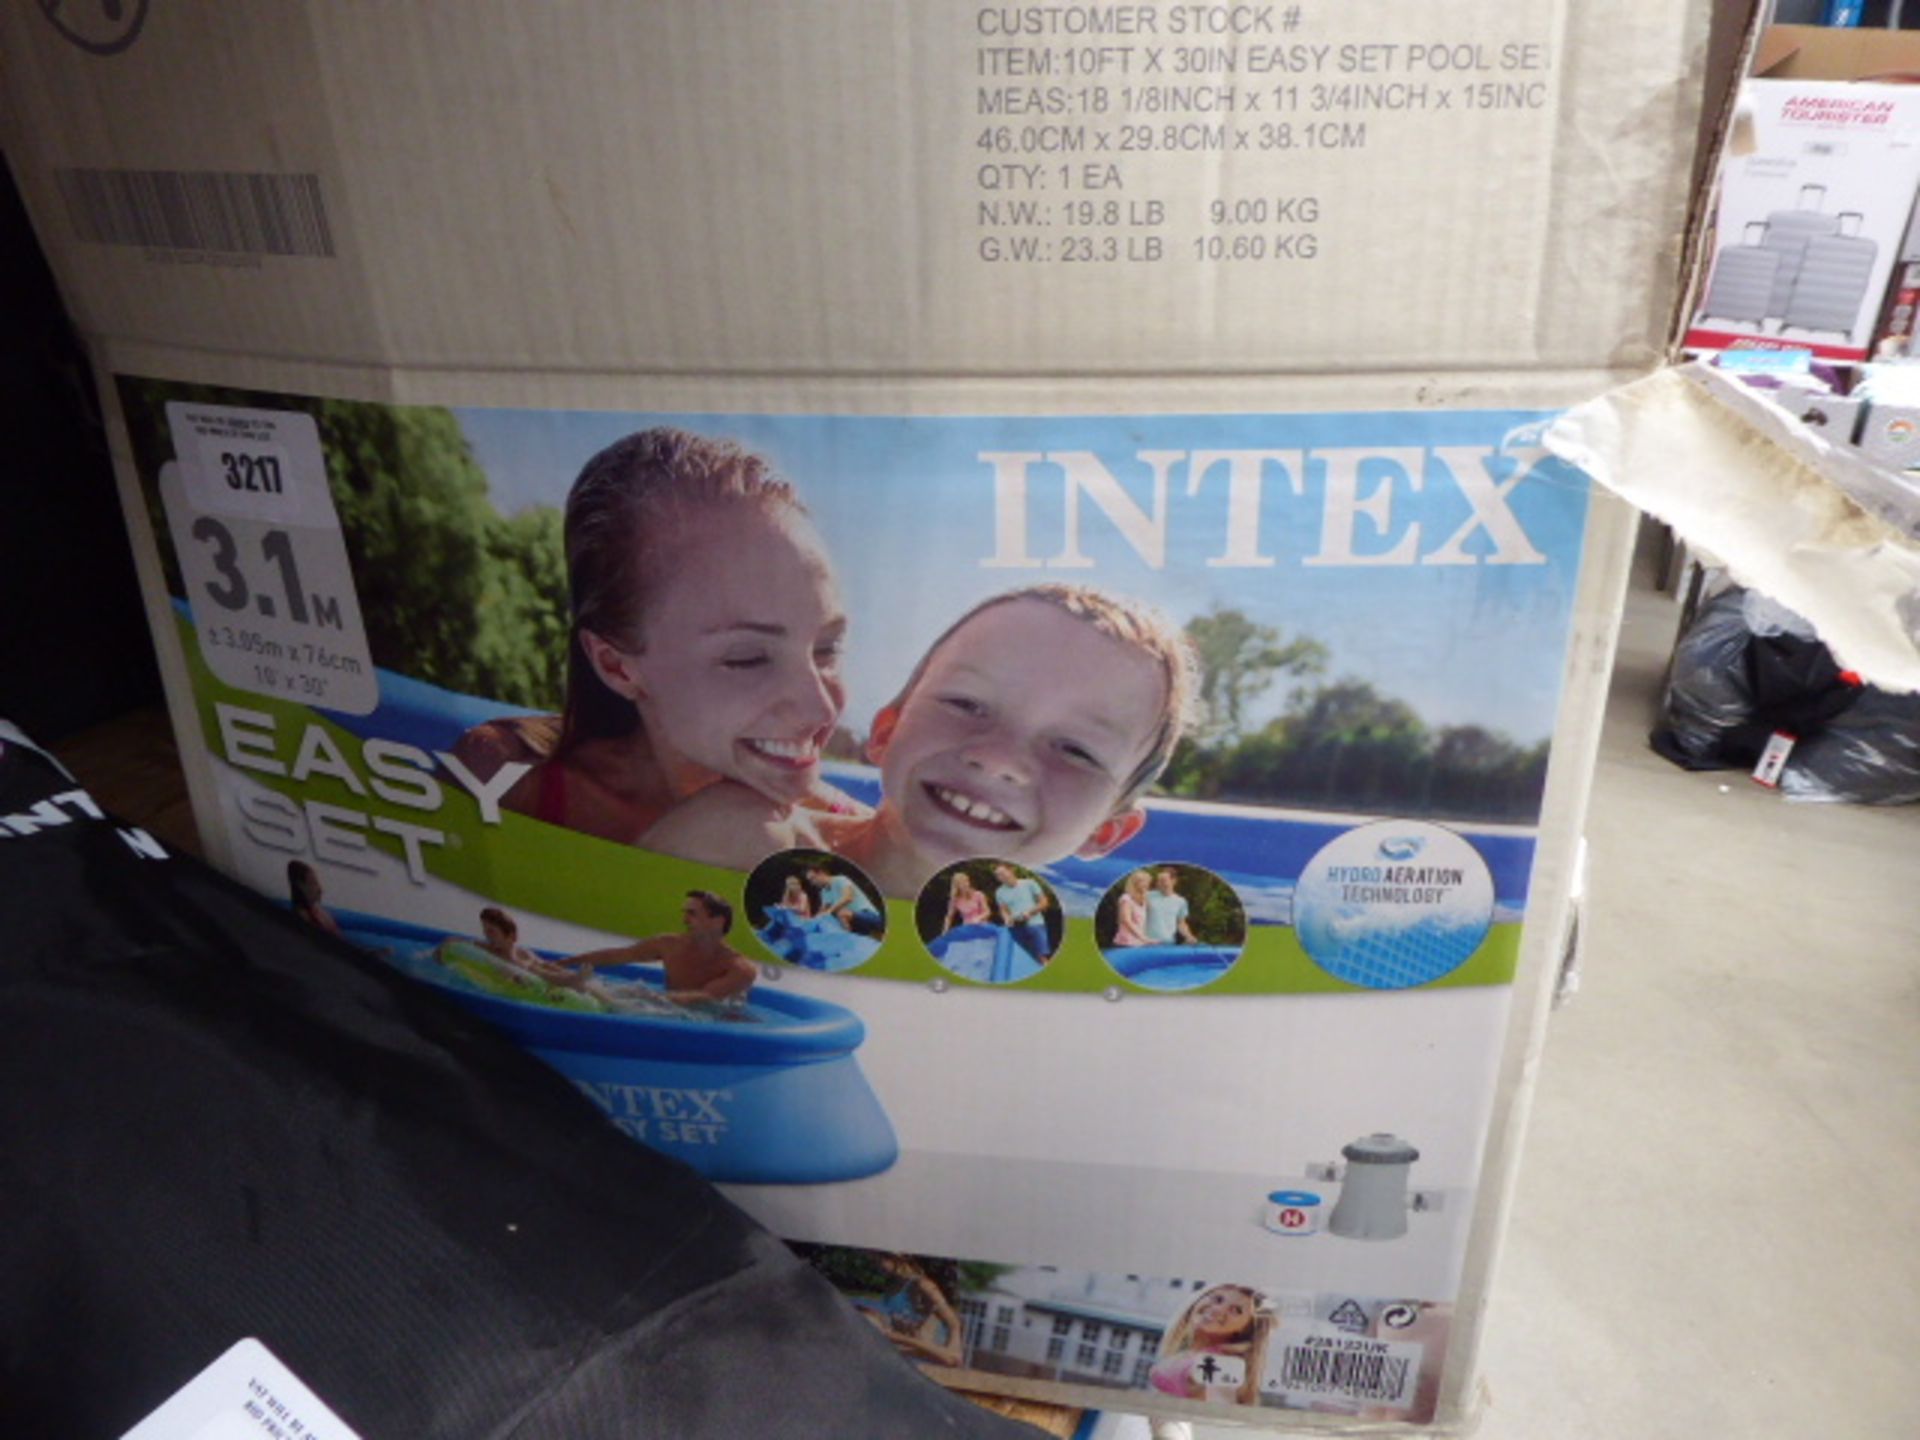 Intex Easyset swimming pool